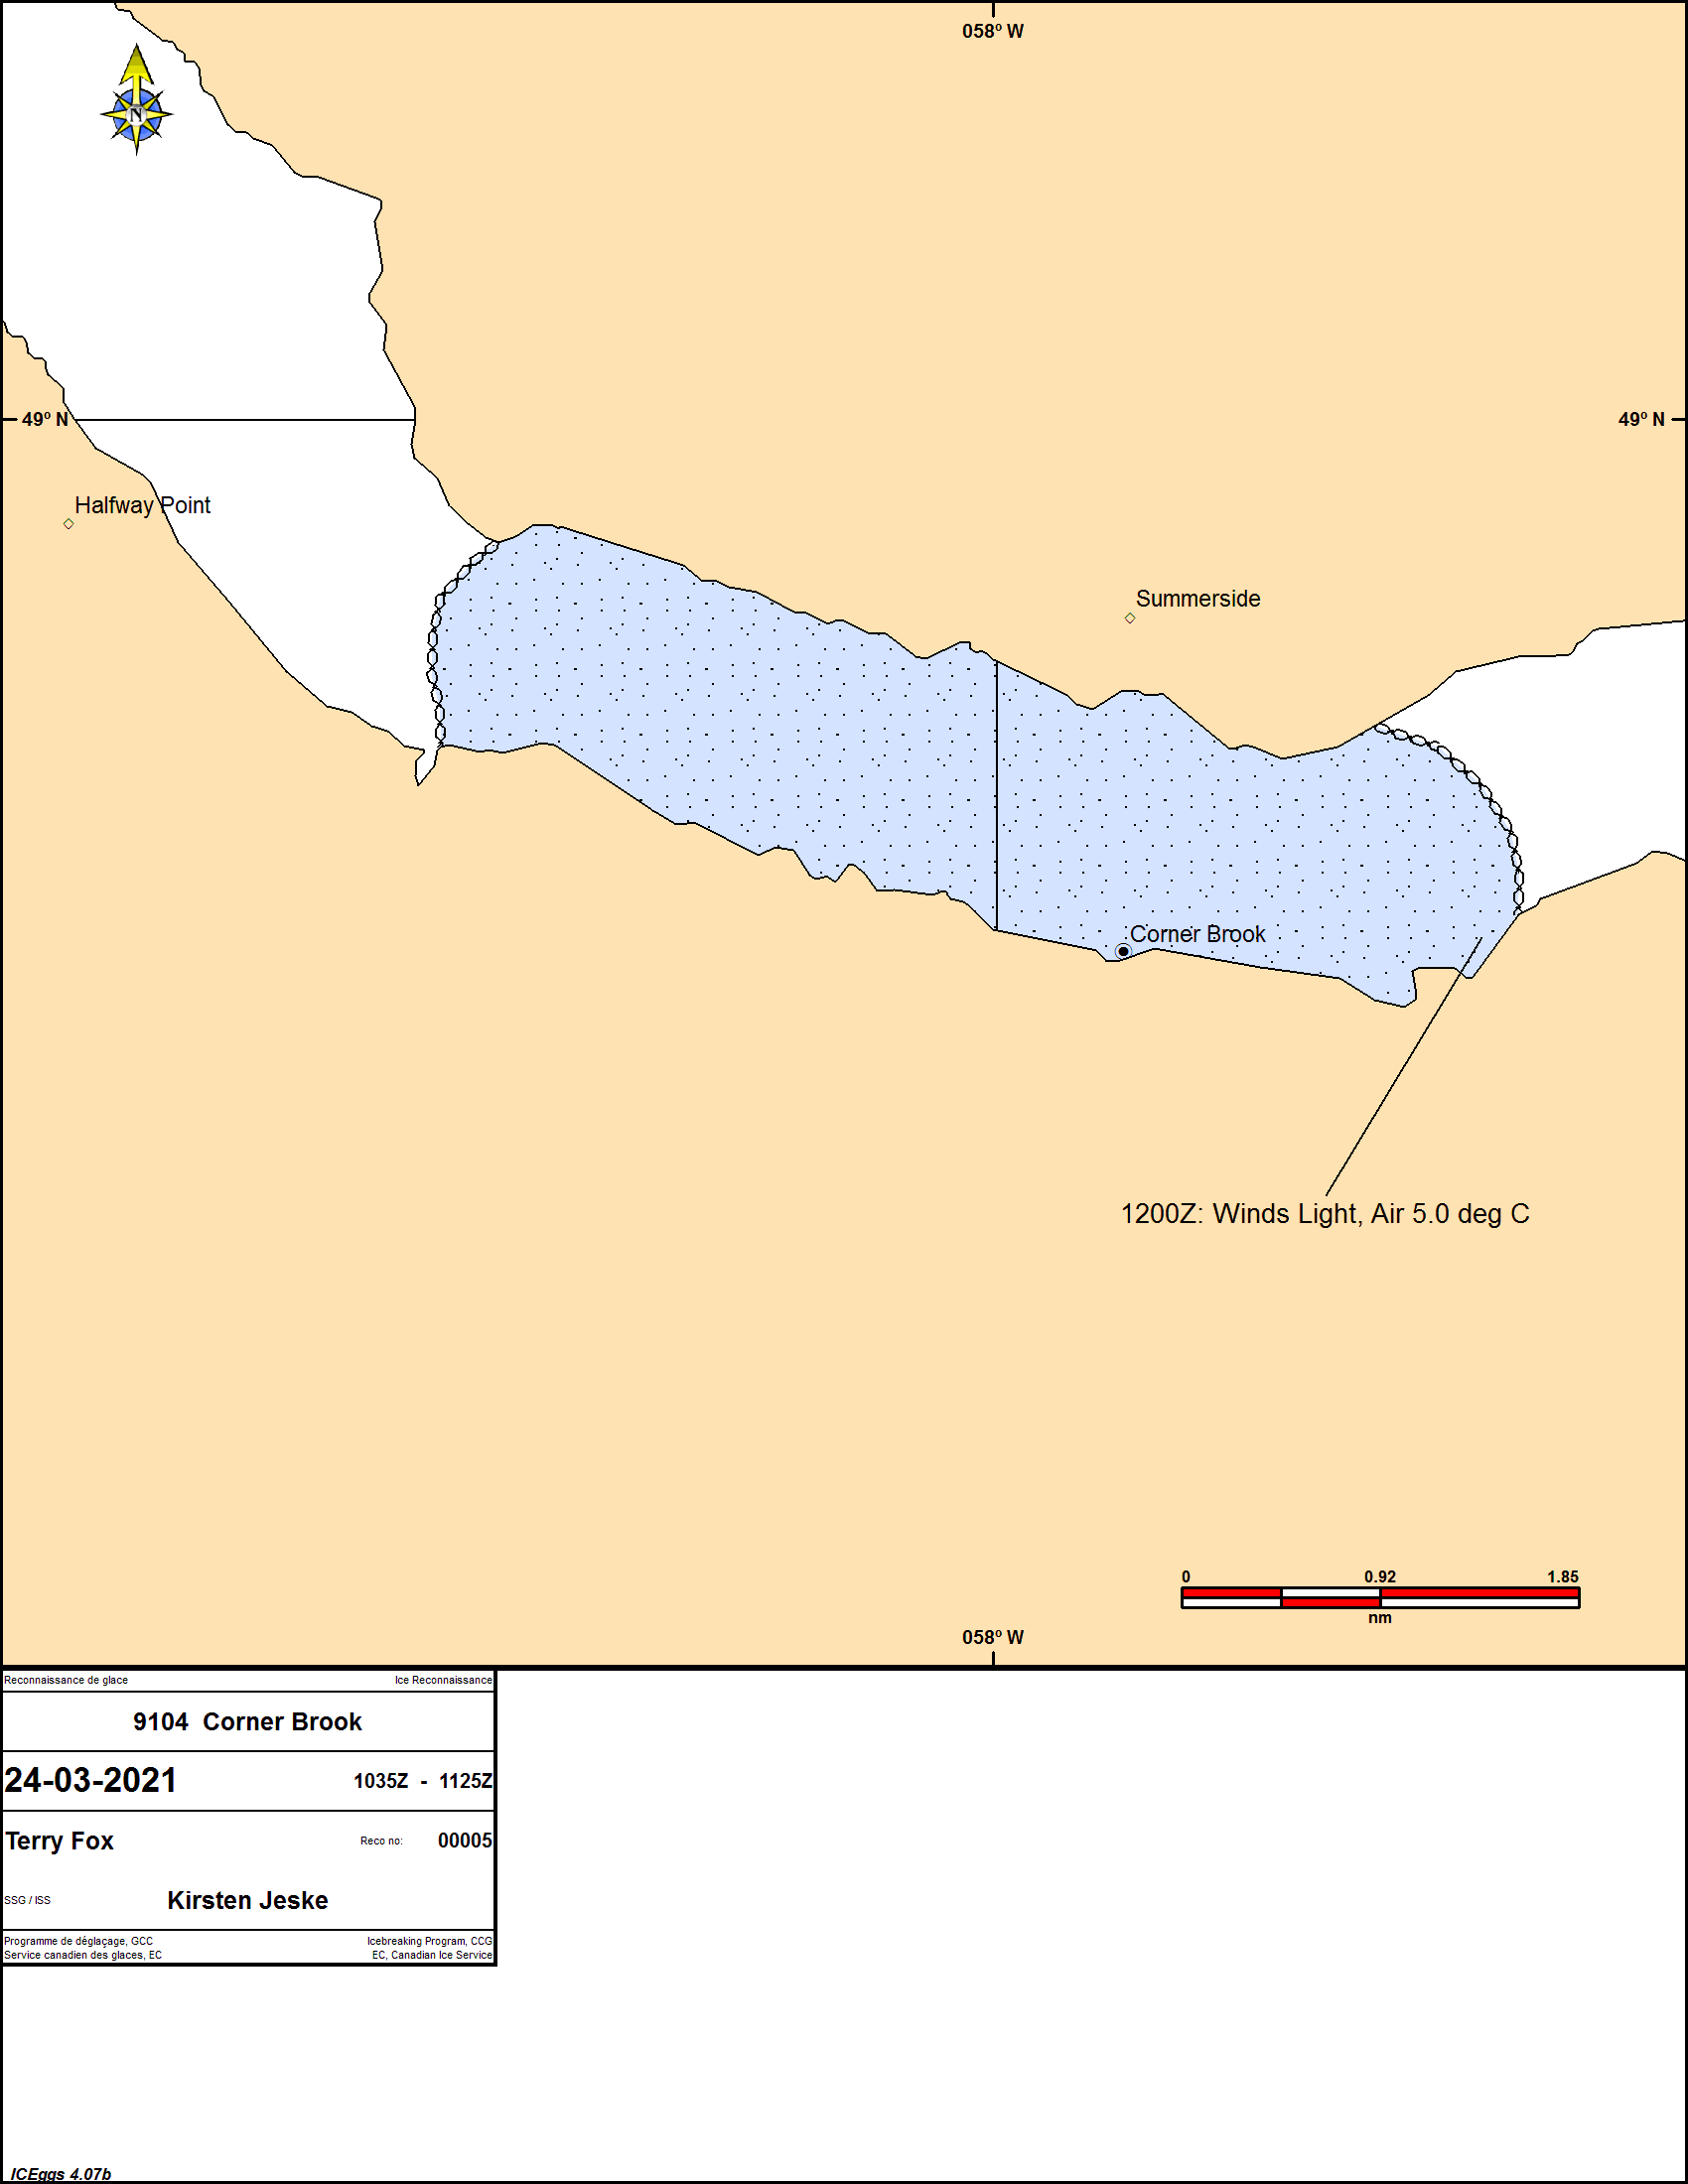 Ice Chart Saint-Lawrence Gulf